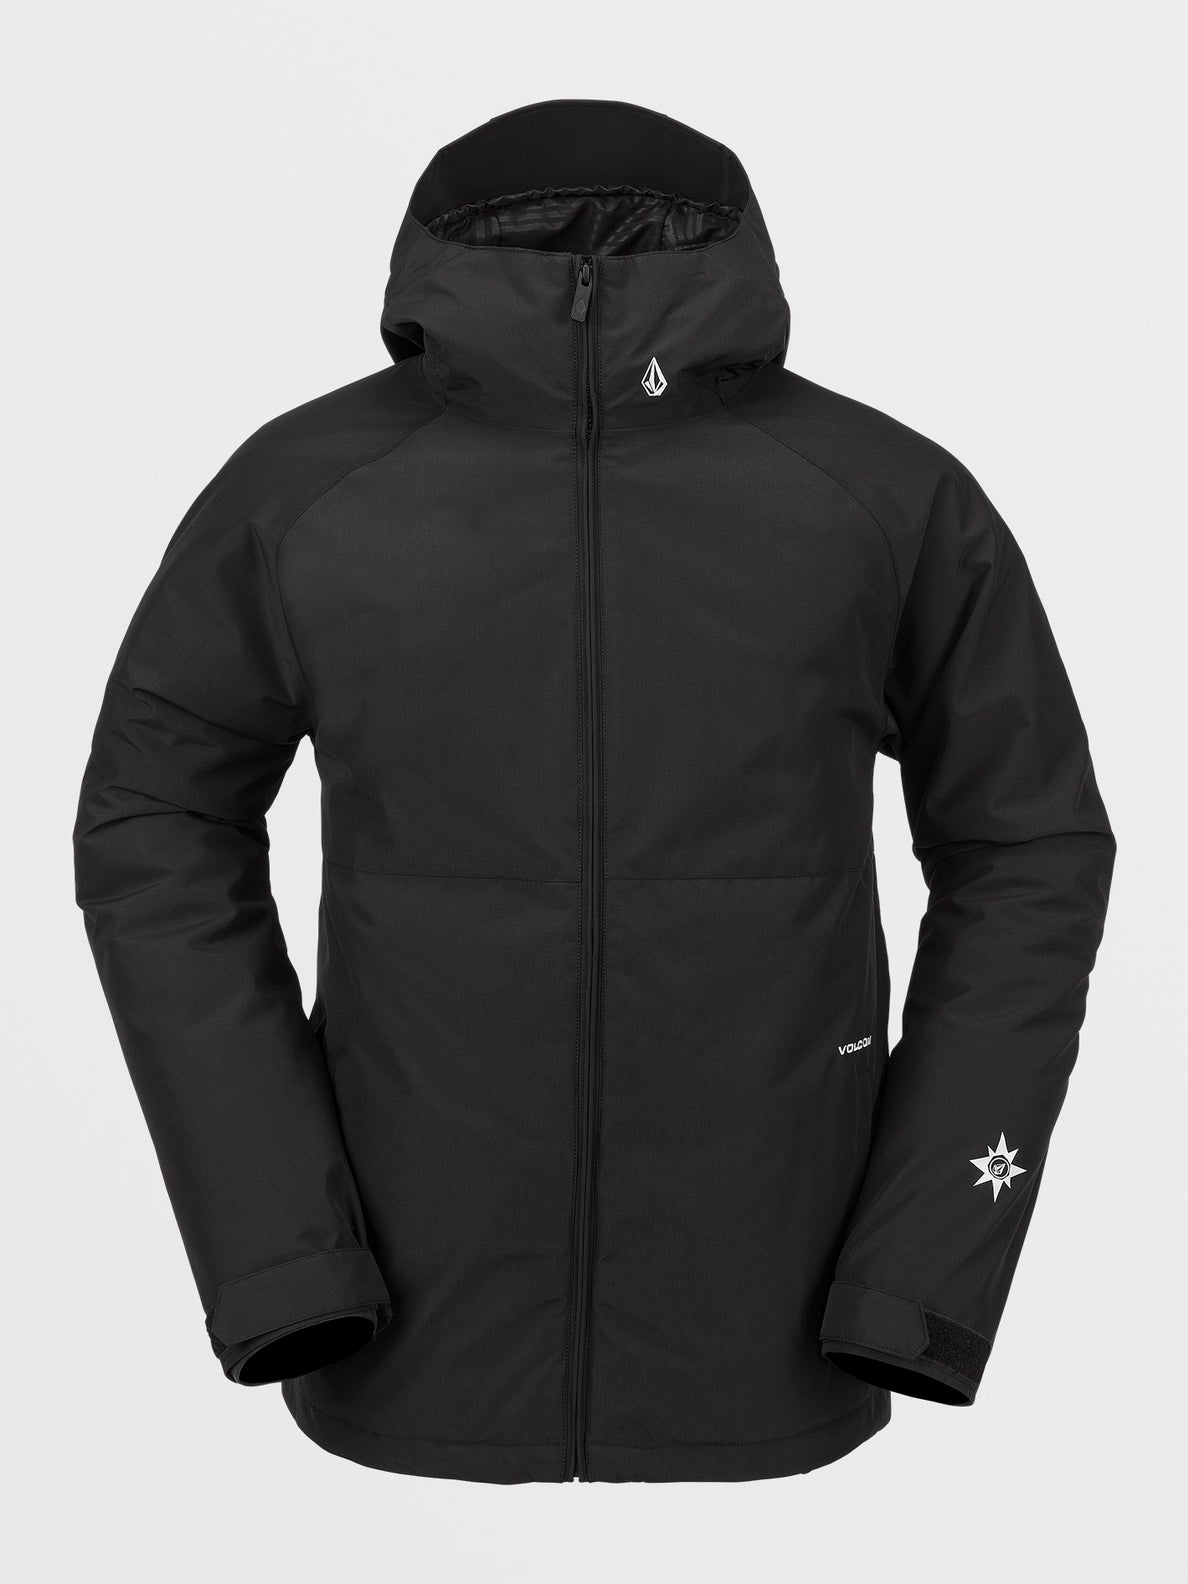 Mens 2836 Insulated Jacket - Black – Volcom Canada